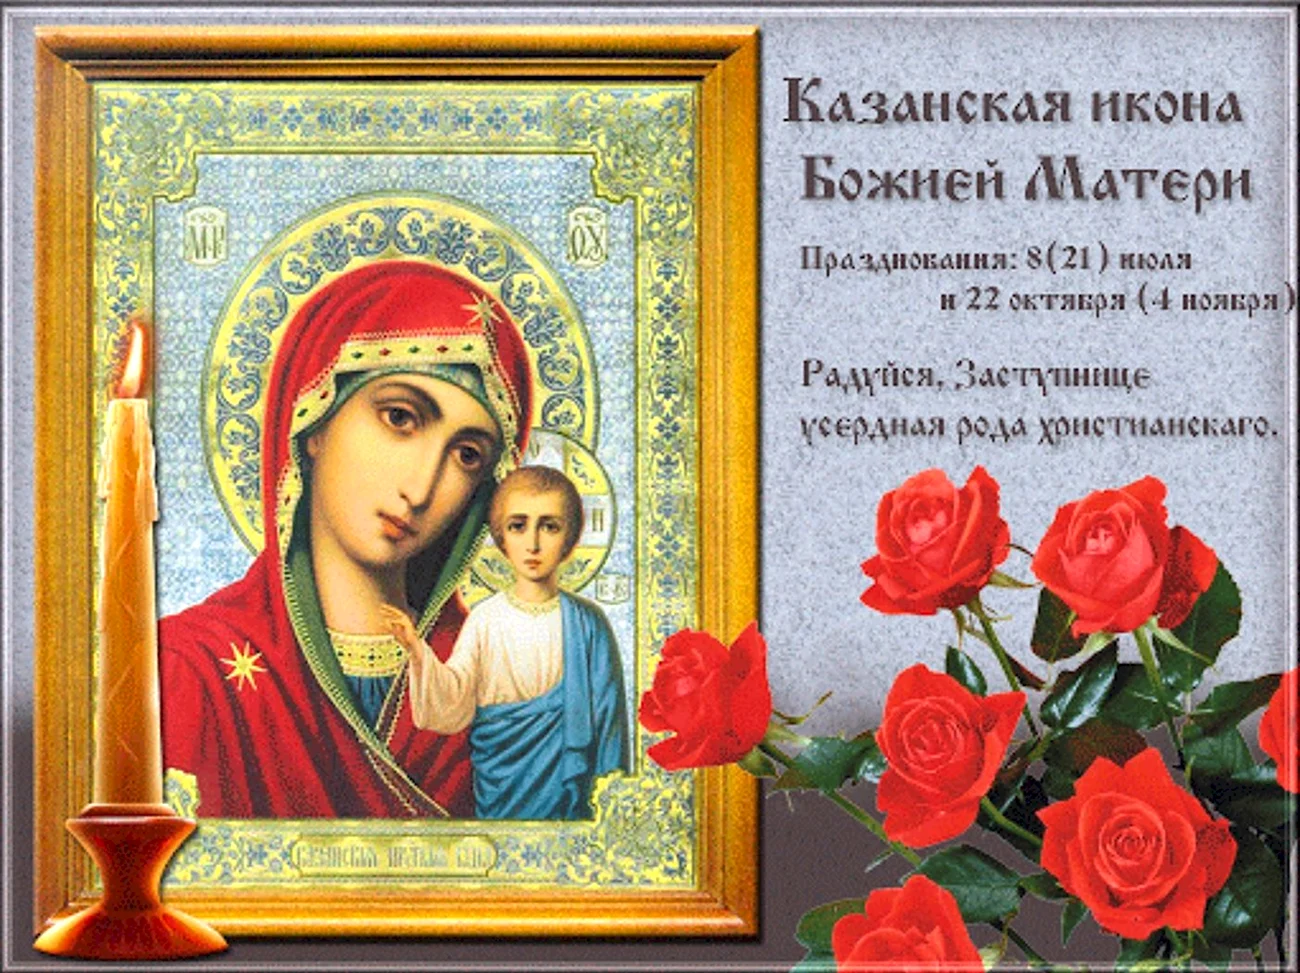 21 Июля православный праздник Казанской иконы Божией матери. Поздравление